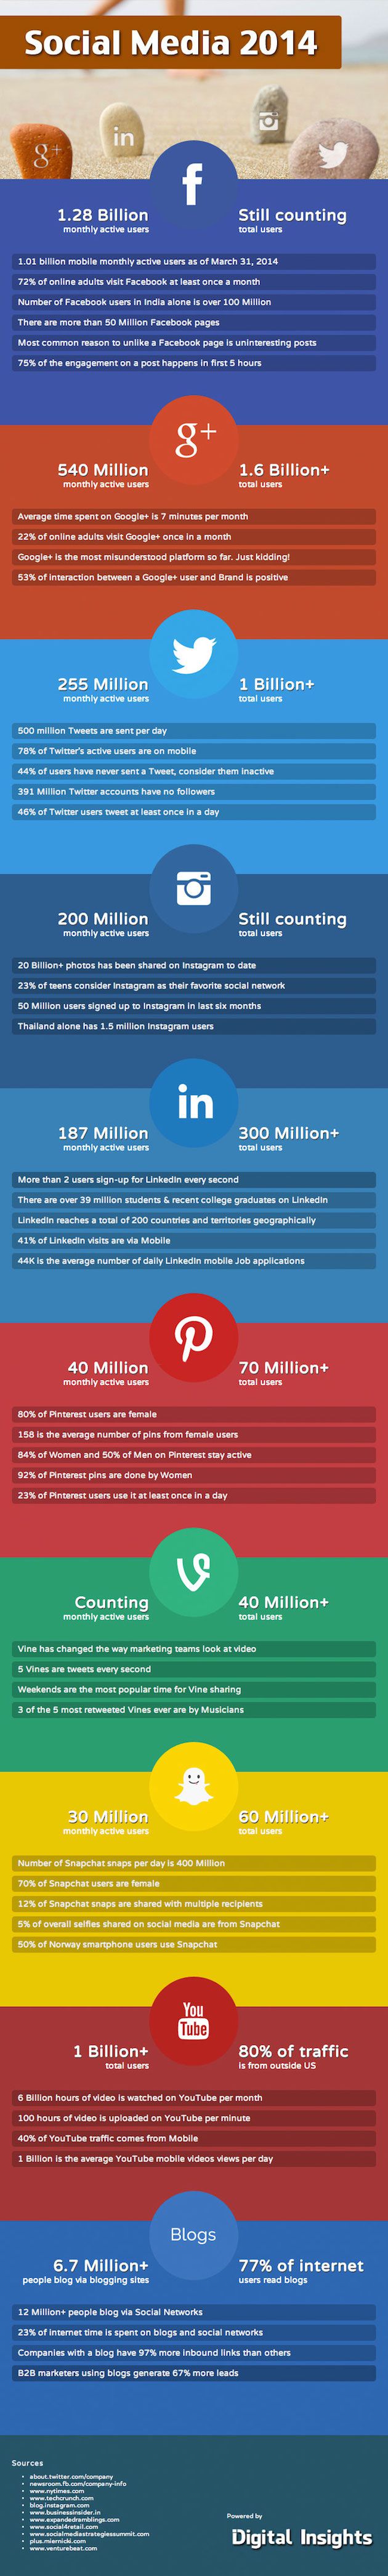 social-media-statistics-2014